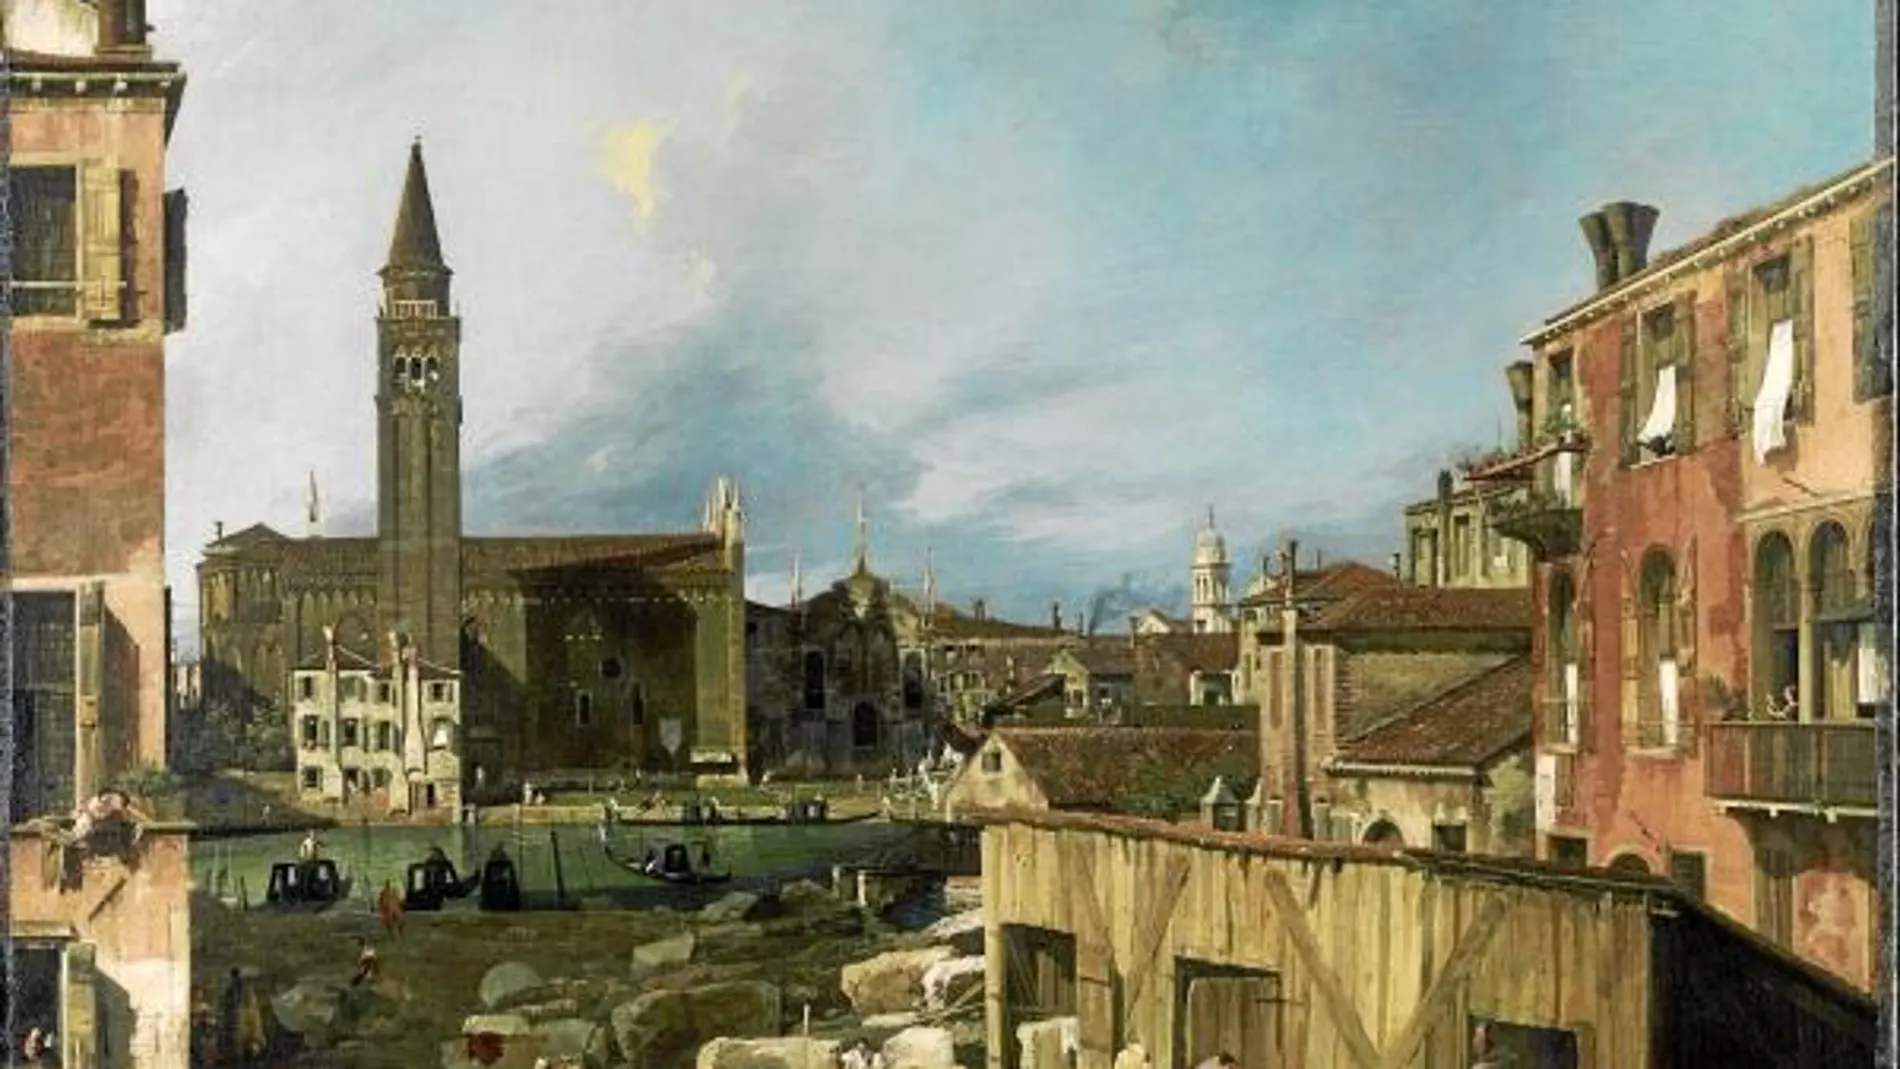 «Venice: Campo San Vidal y Santa Maria della Carita», de Canaletto